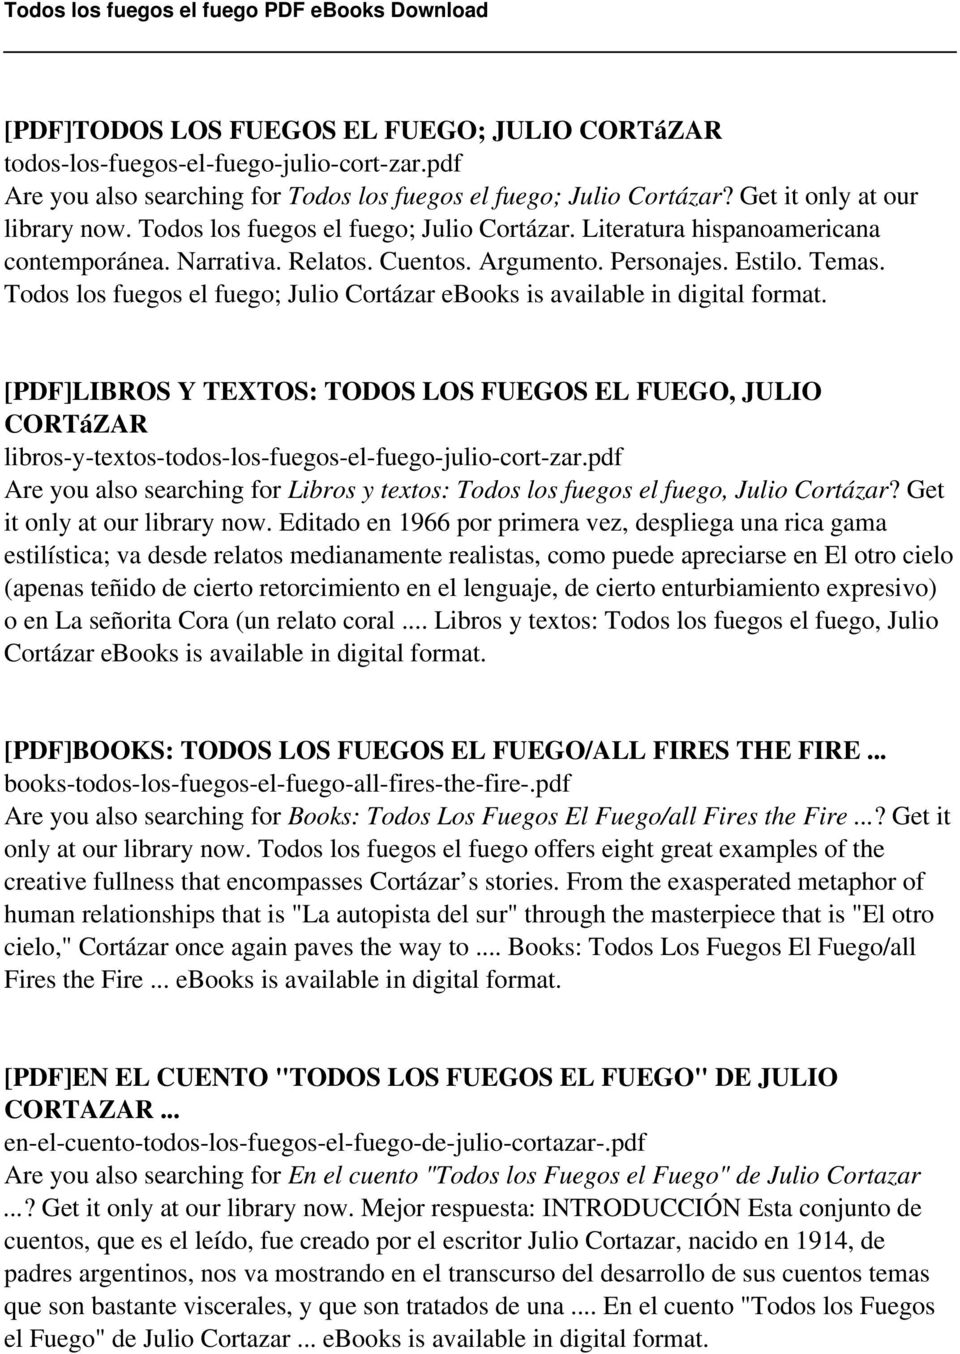 Todos los fuegos el fuego; Julio Cortázar ebooks is available in digital format.